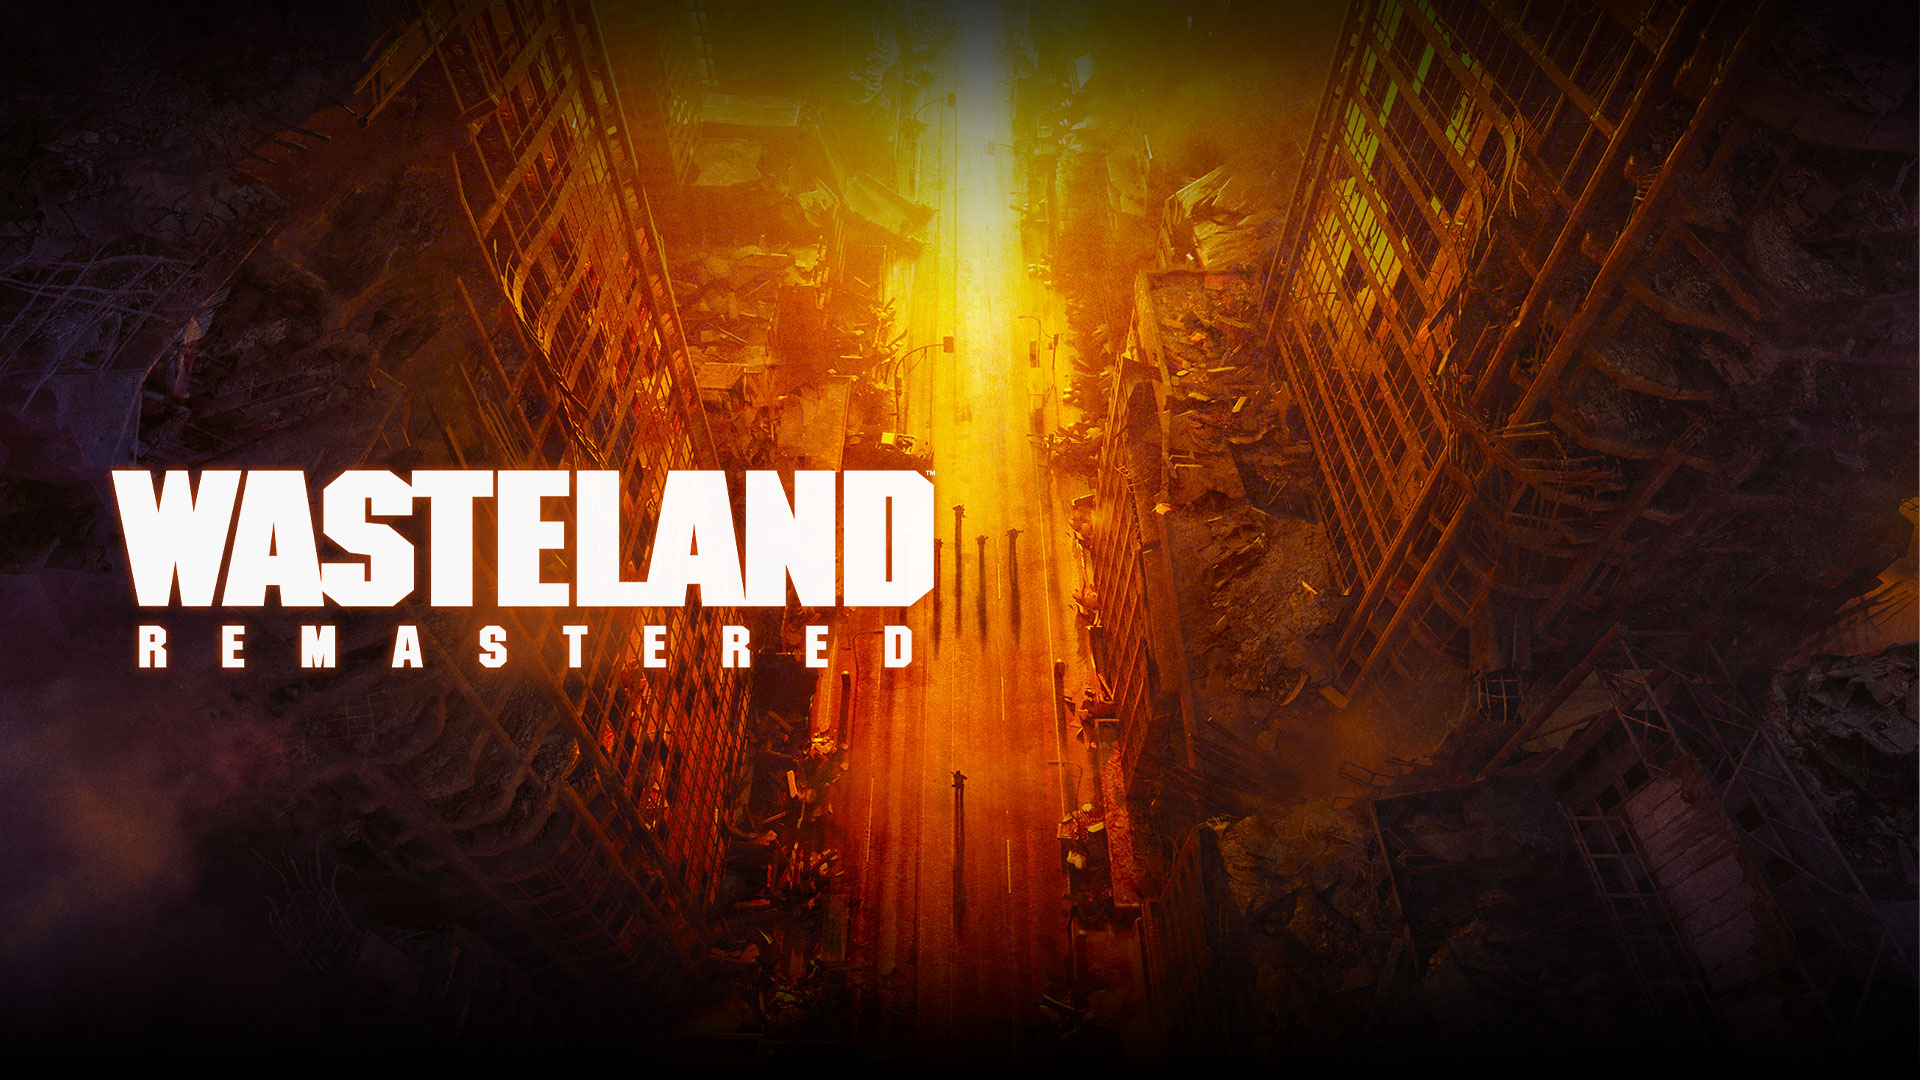 Wasteland リマスター、黄色、オレンジ色、赤の色合いにある、壊れた建物や人々のトップビュー